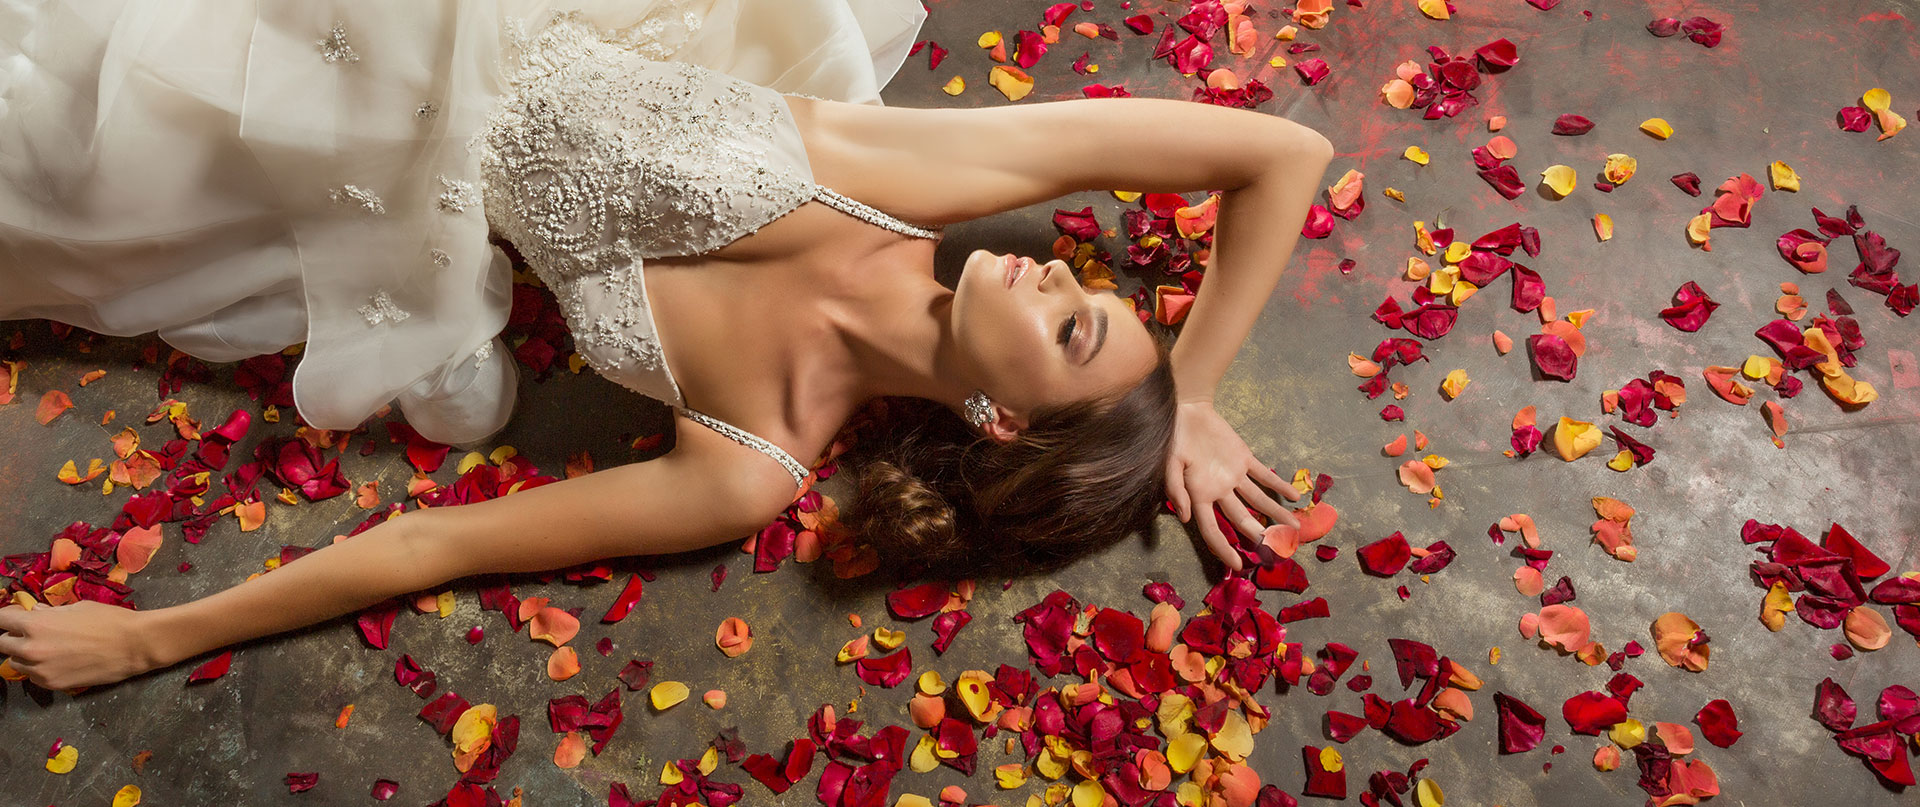 Braut im Hochzeitskleid umgeben von Rosenblättern